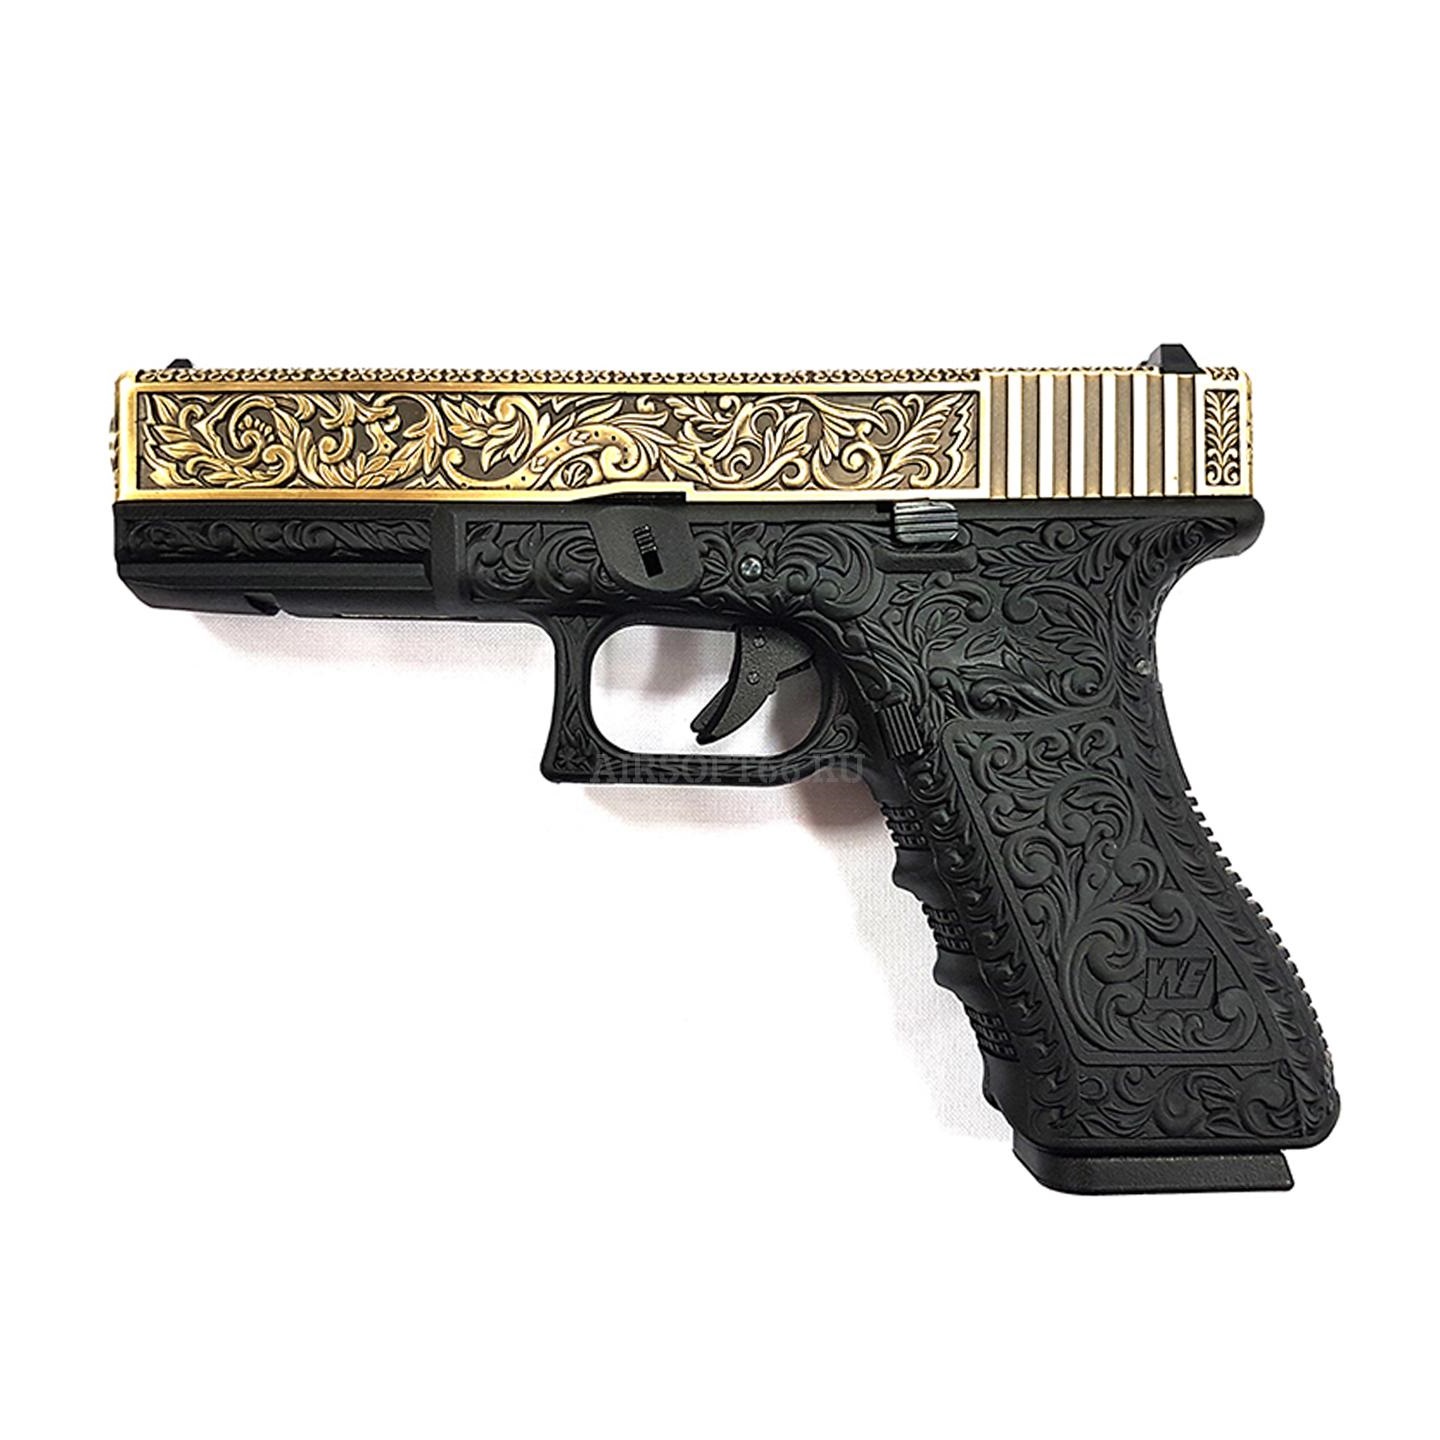 Пистолет страйкбольный (WE) Glock-35 gen, WE-G009BOX-BR